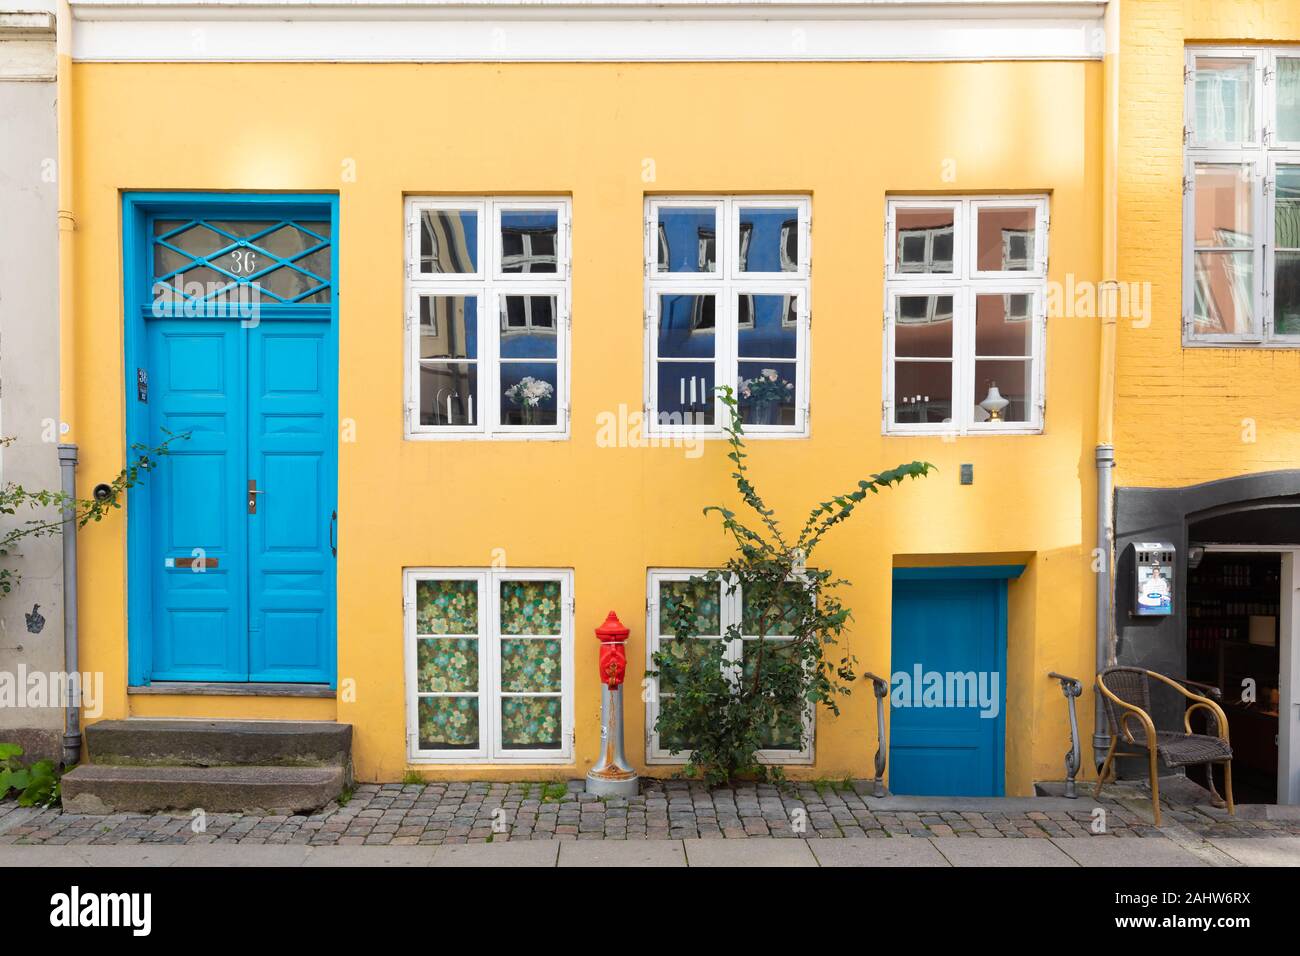 Copenhague, Danemark : Art et coloré jaune / orange maison de ville peint bleu et blanc avec portes fenêtres encadrées par une chaussée pavée. Banque D'Images